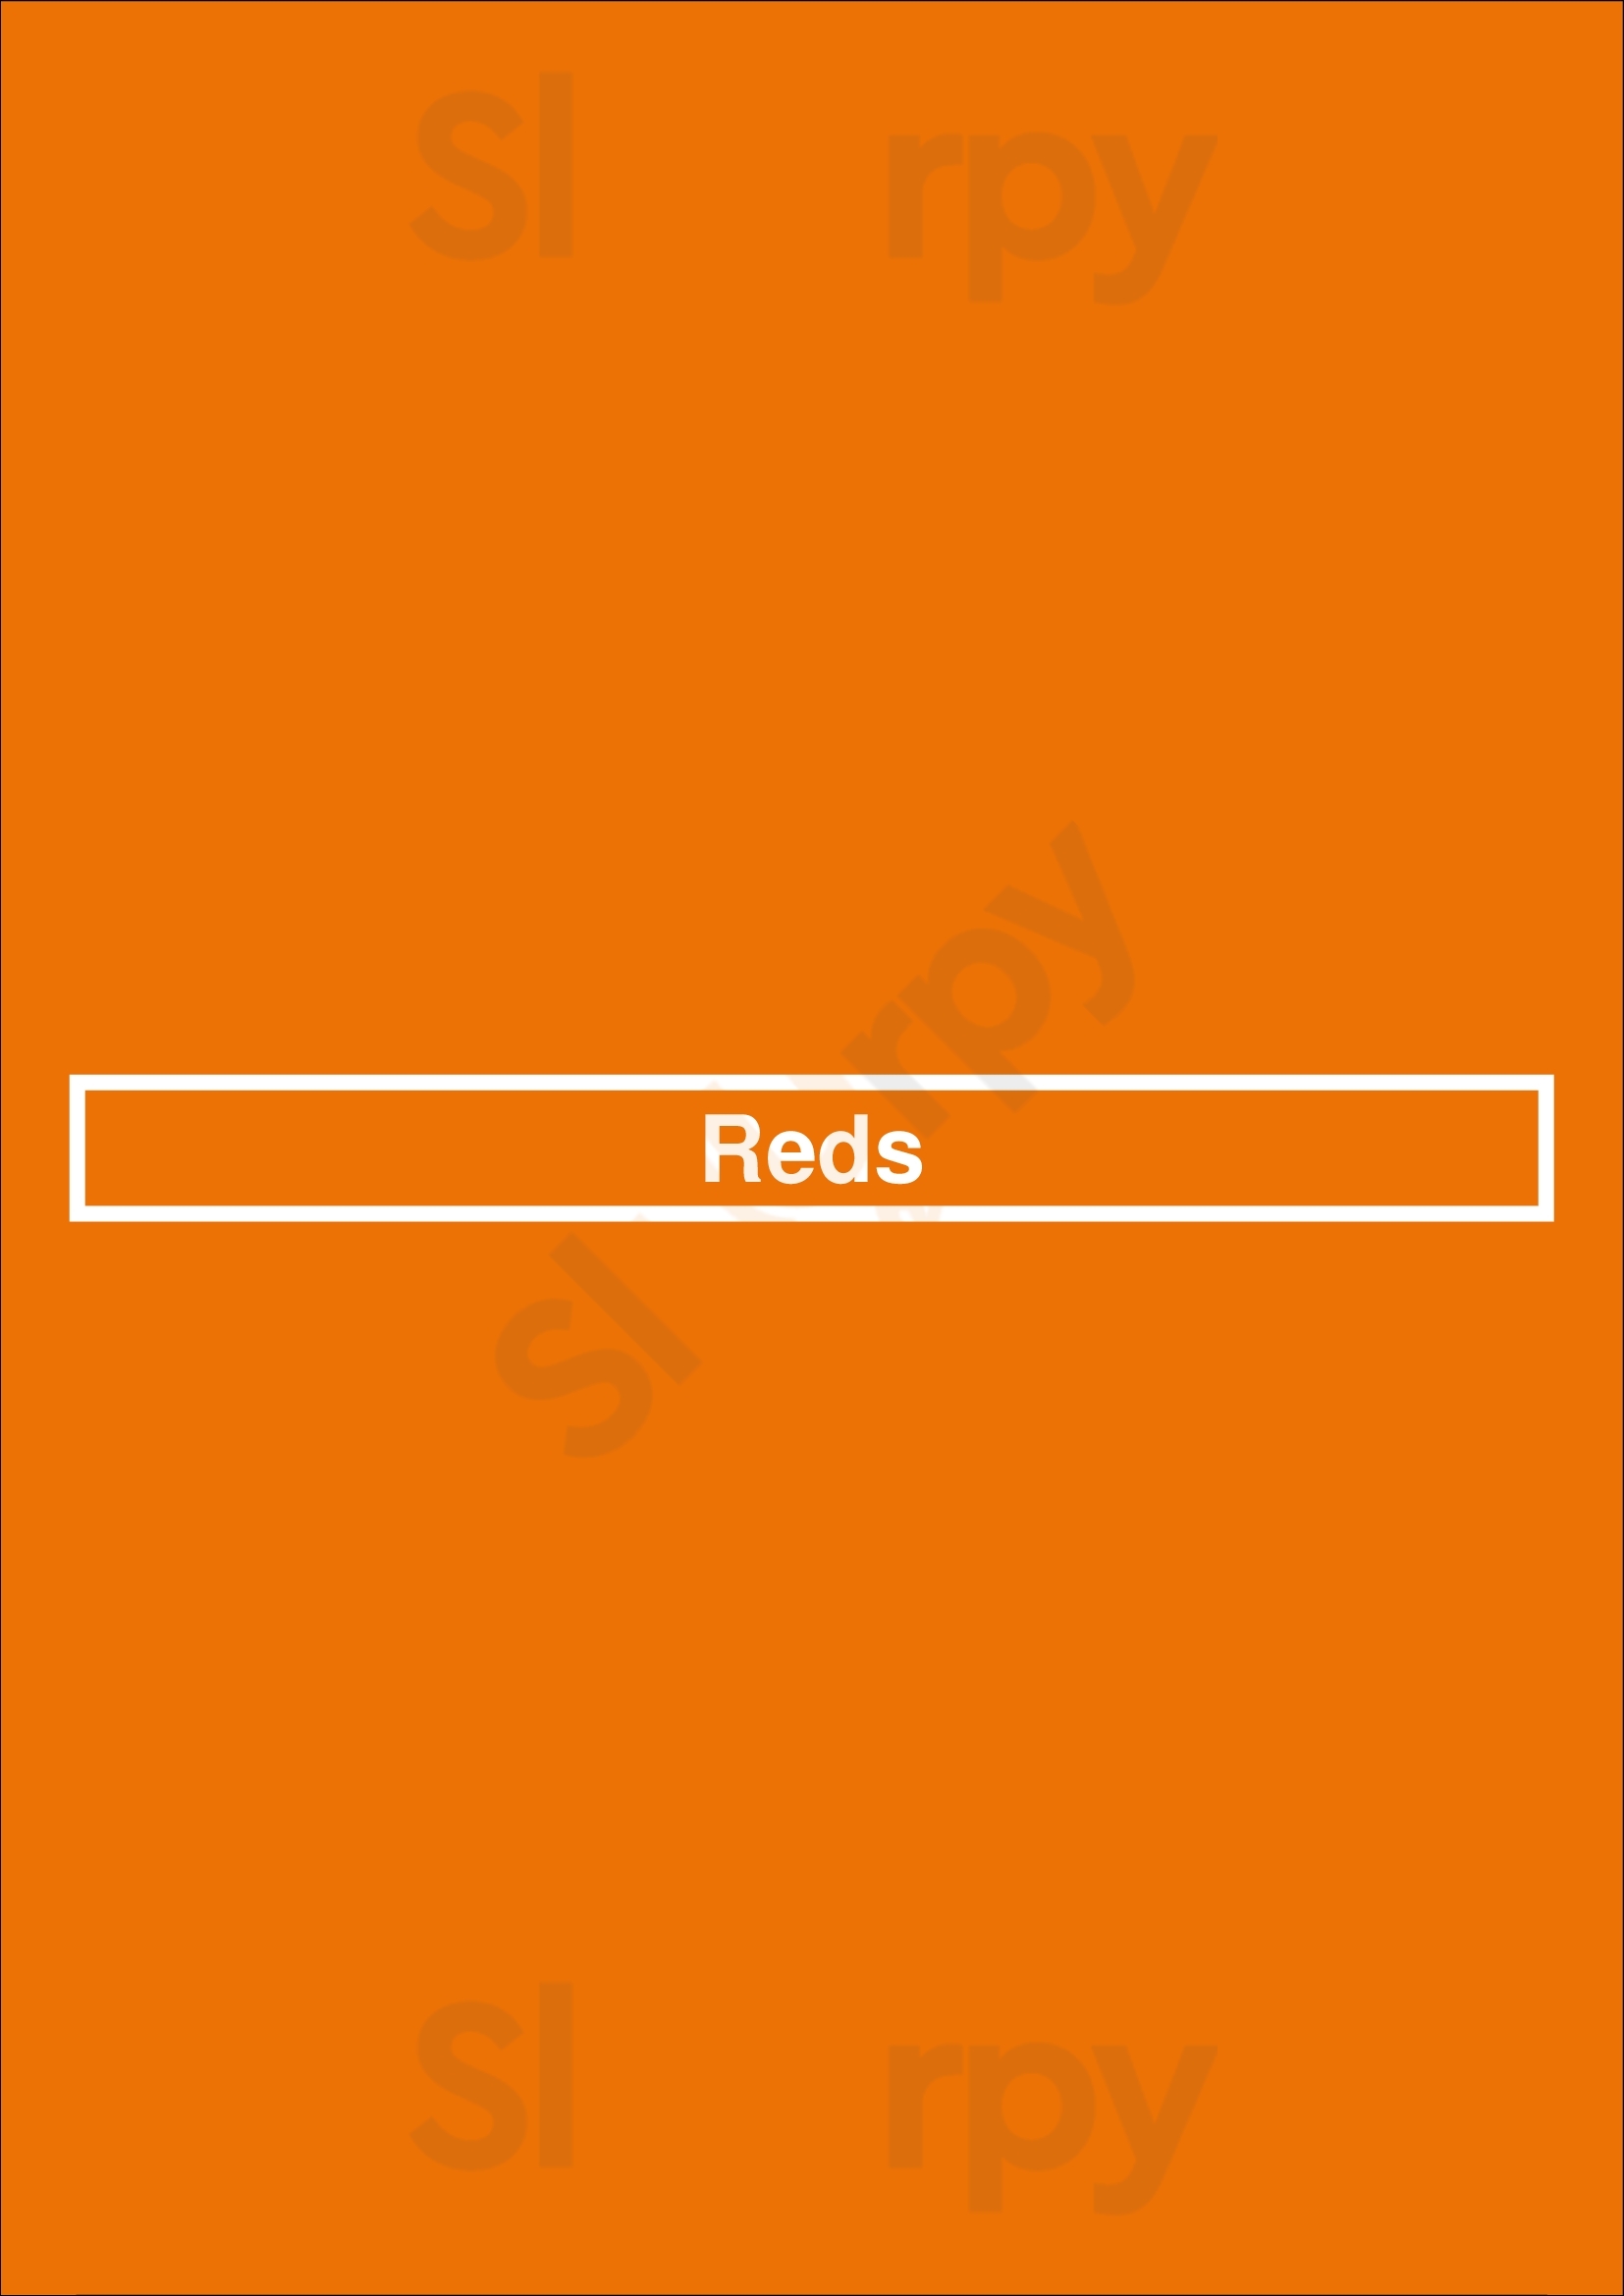 Reds Toronto Menu - 1